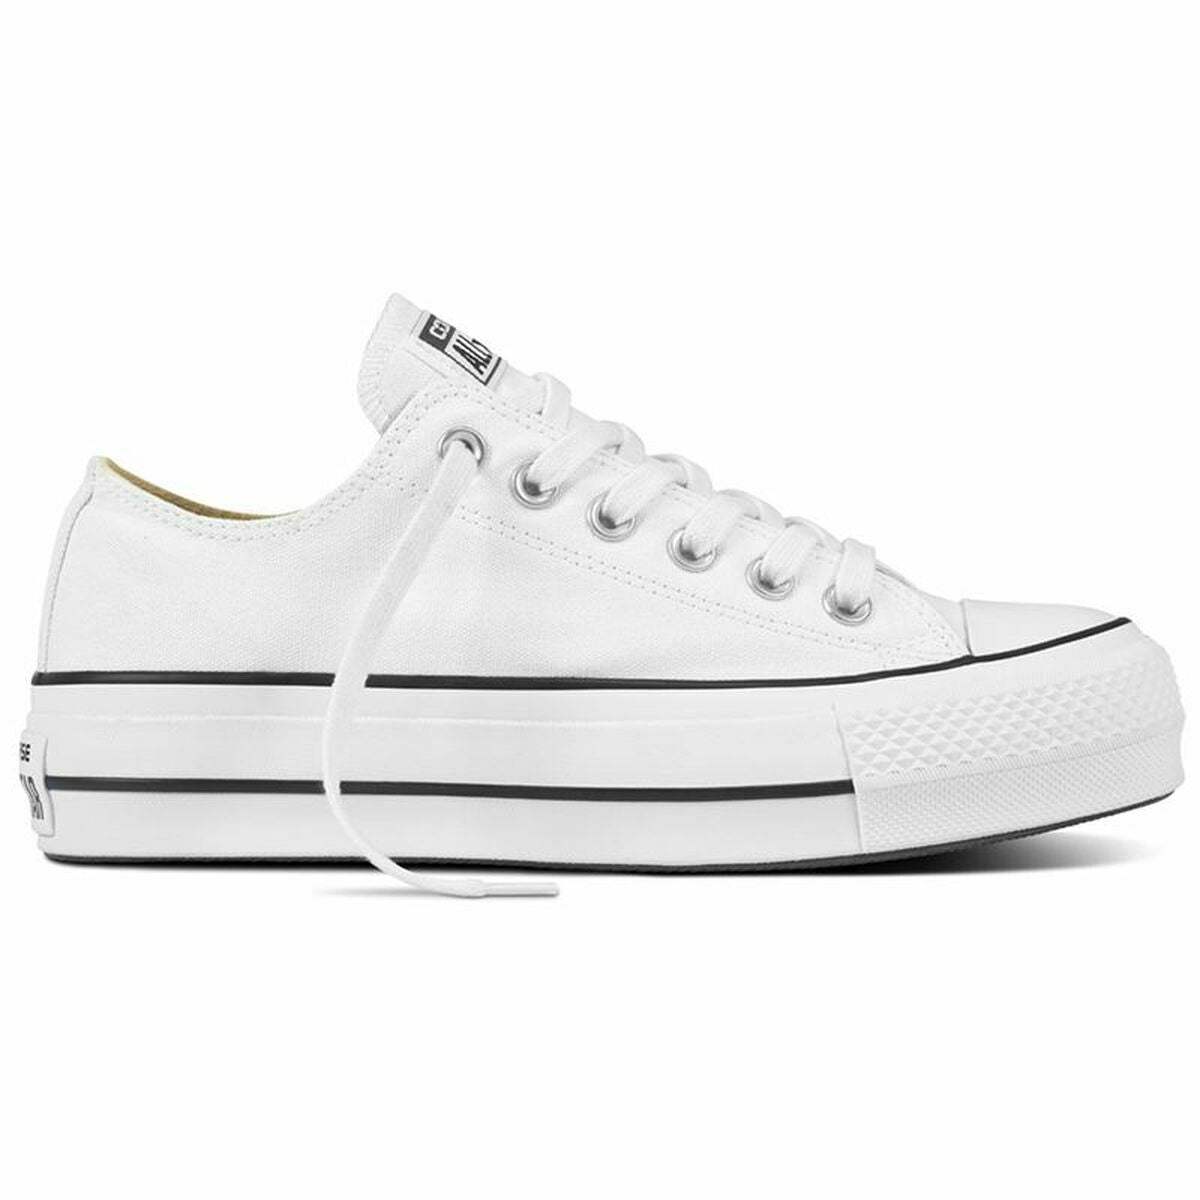 Chaussures de sport pour femme Converse Chuck Taylor All Star Blanc - Converse - Jardin D'Eyden - jardindeyden.fr